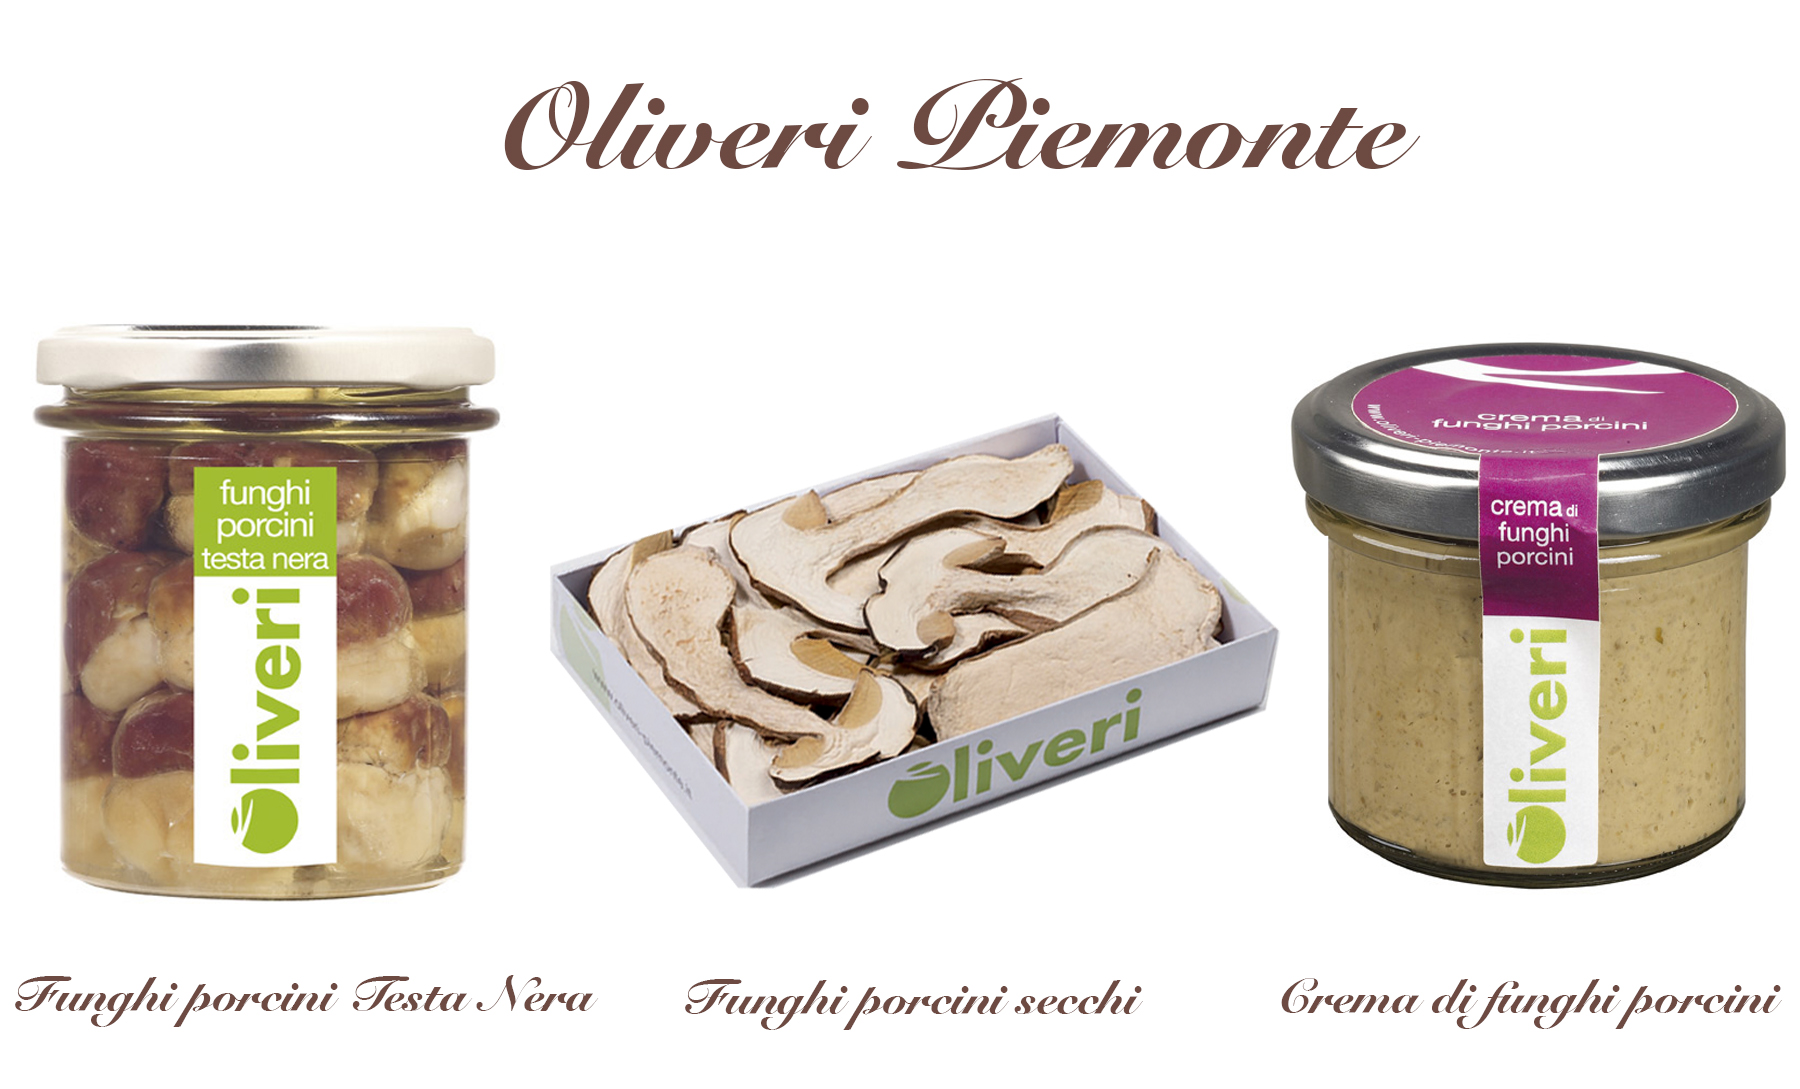 Oliveri Piemonte